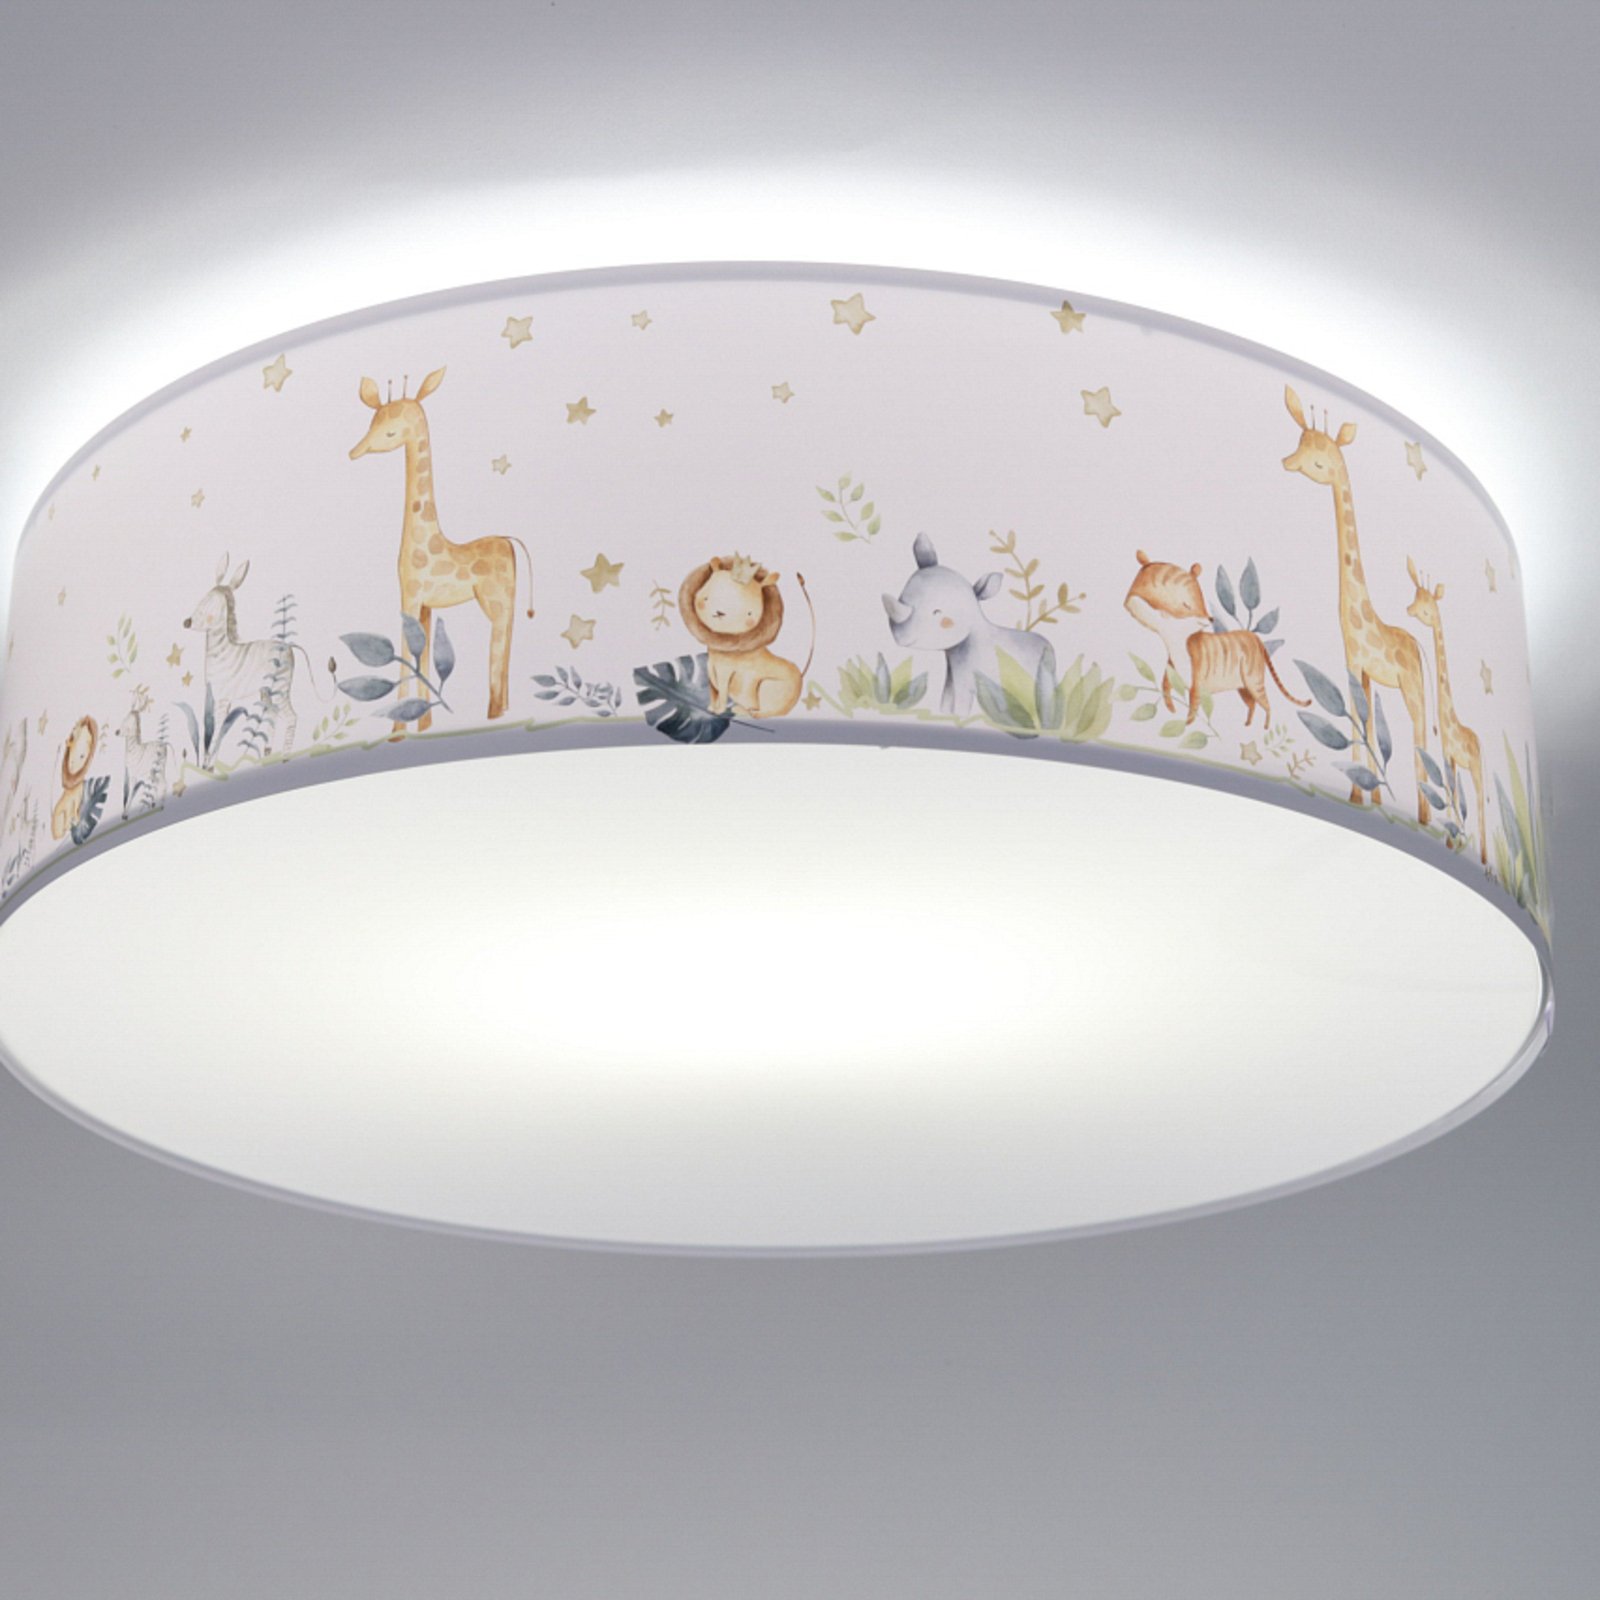 Max children's ceiling light, Ø 50 cm